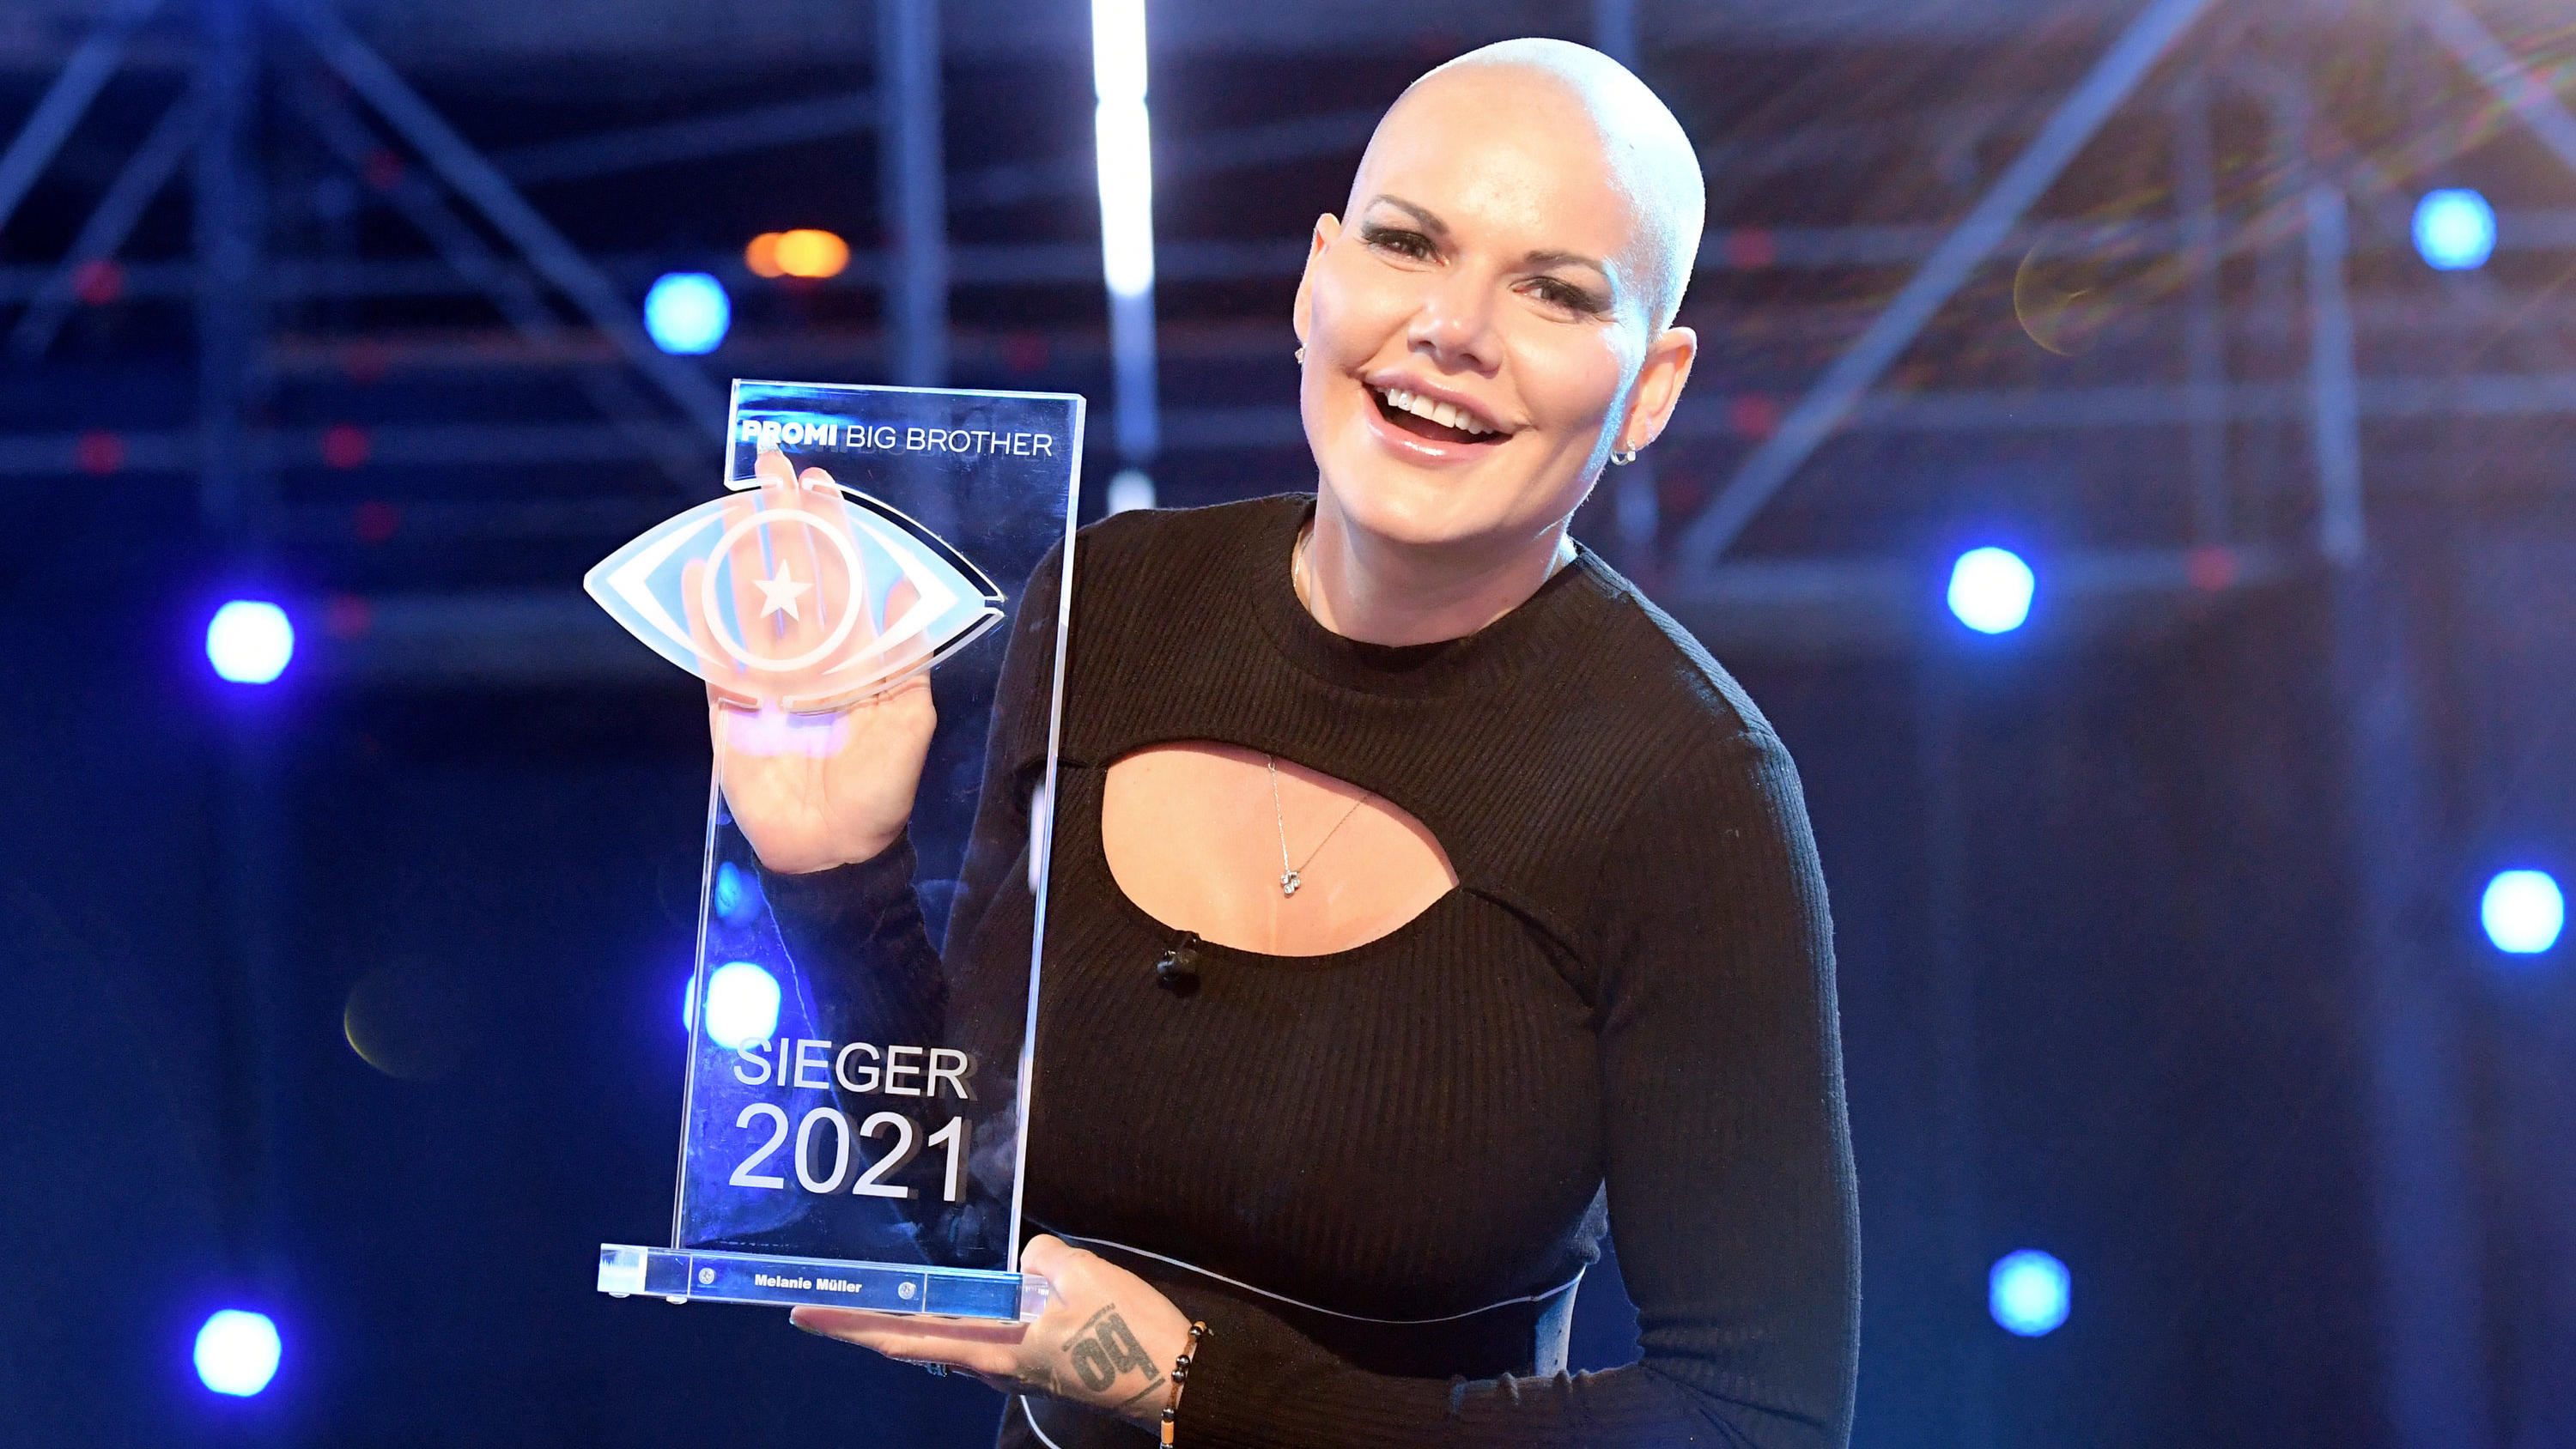 Mit neuem Look: 2021 gewann Melanie Müller "Promi Big Brother"